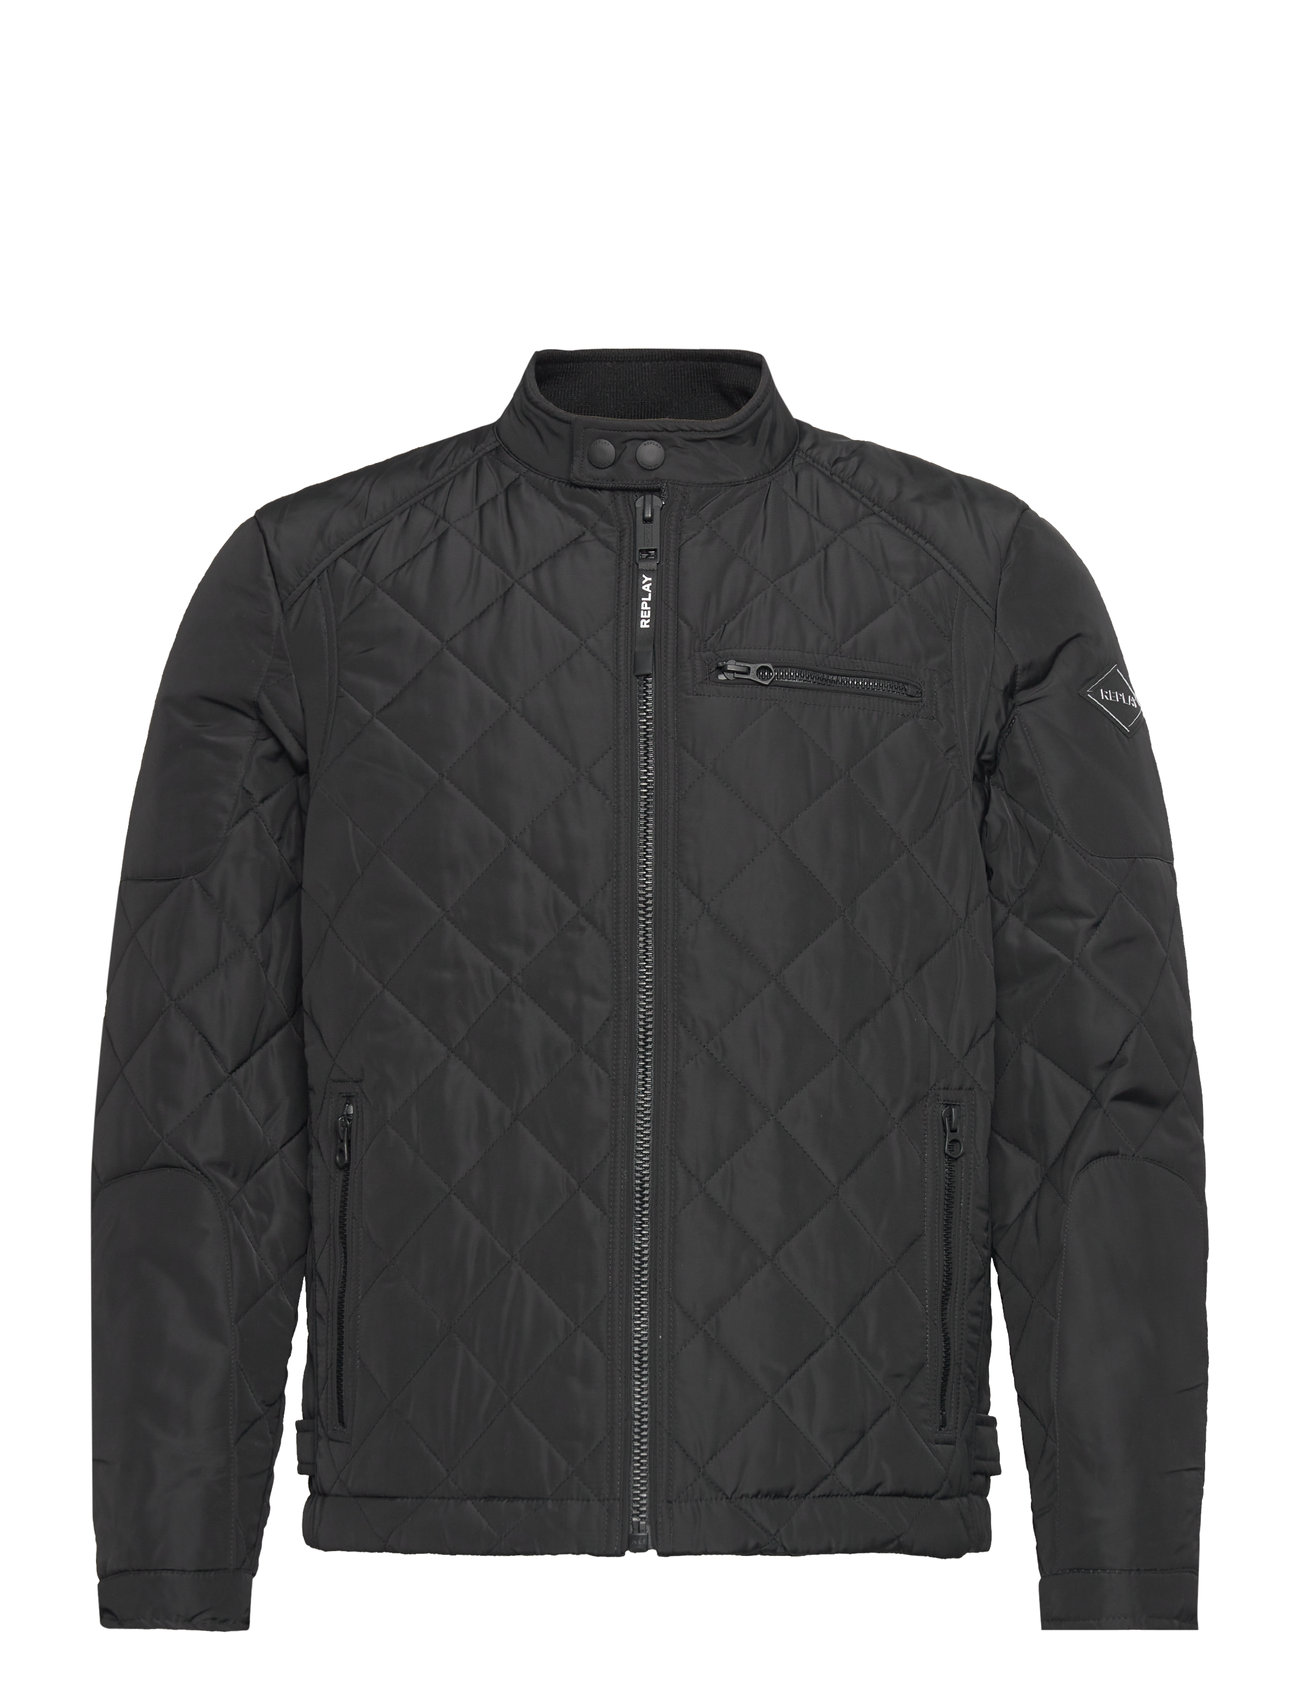 Booztlet shop Replay at – coats – & jackets Regular Jacket